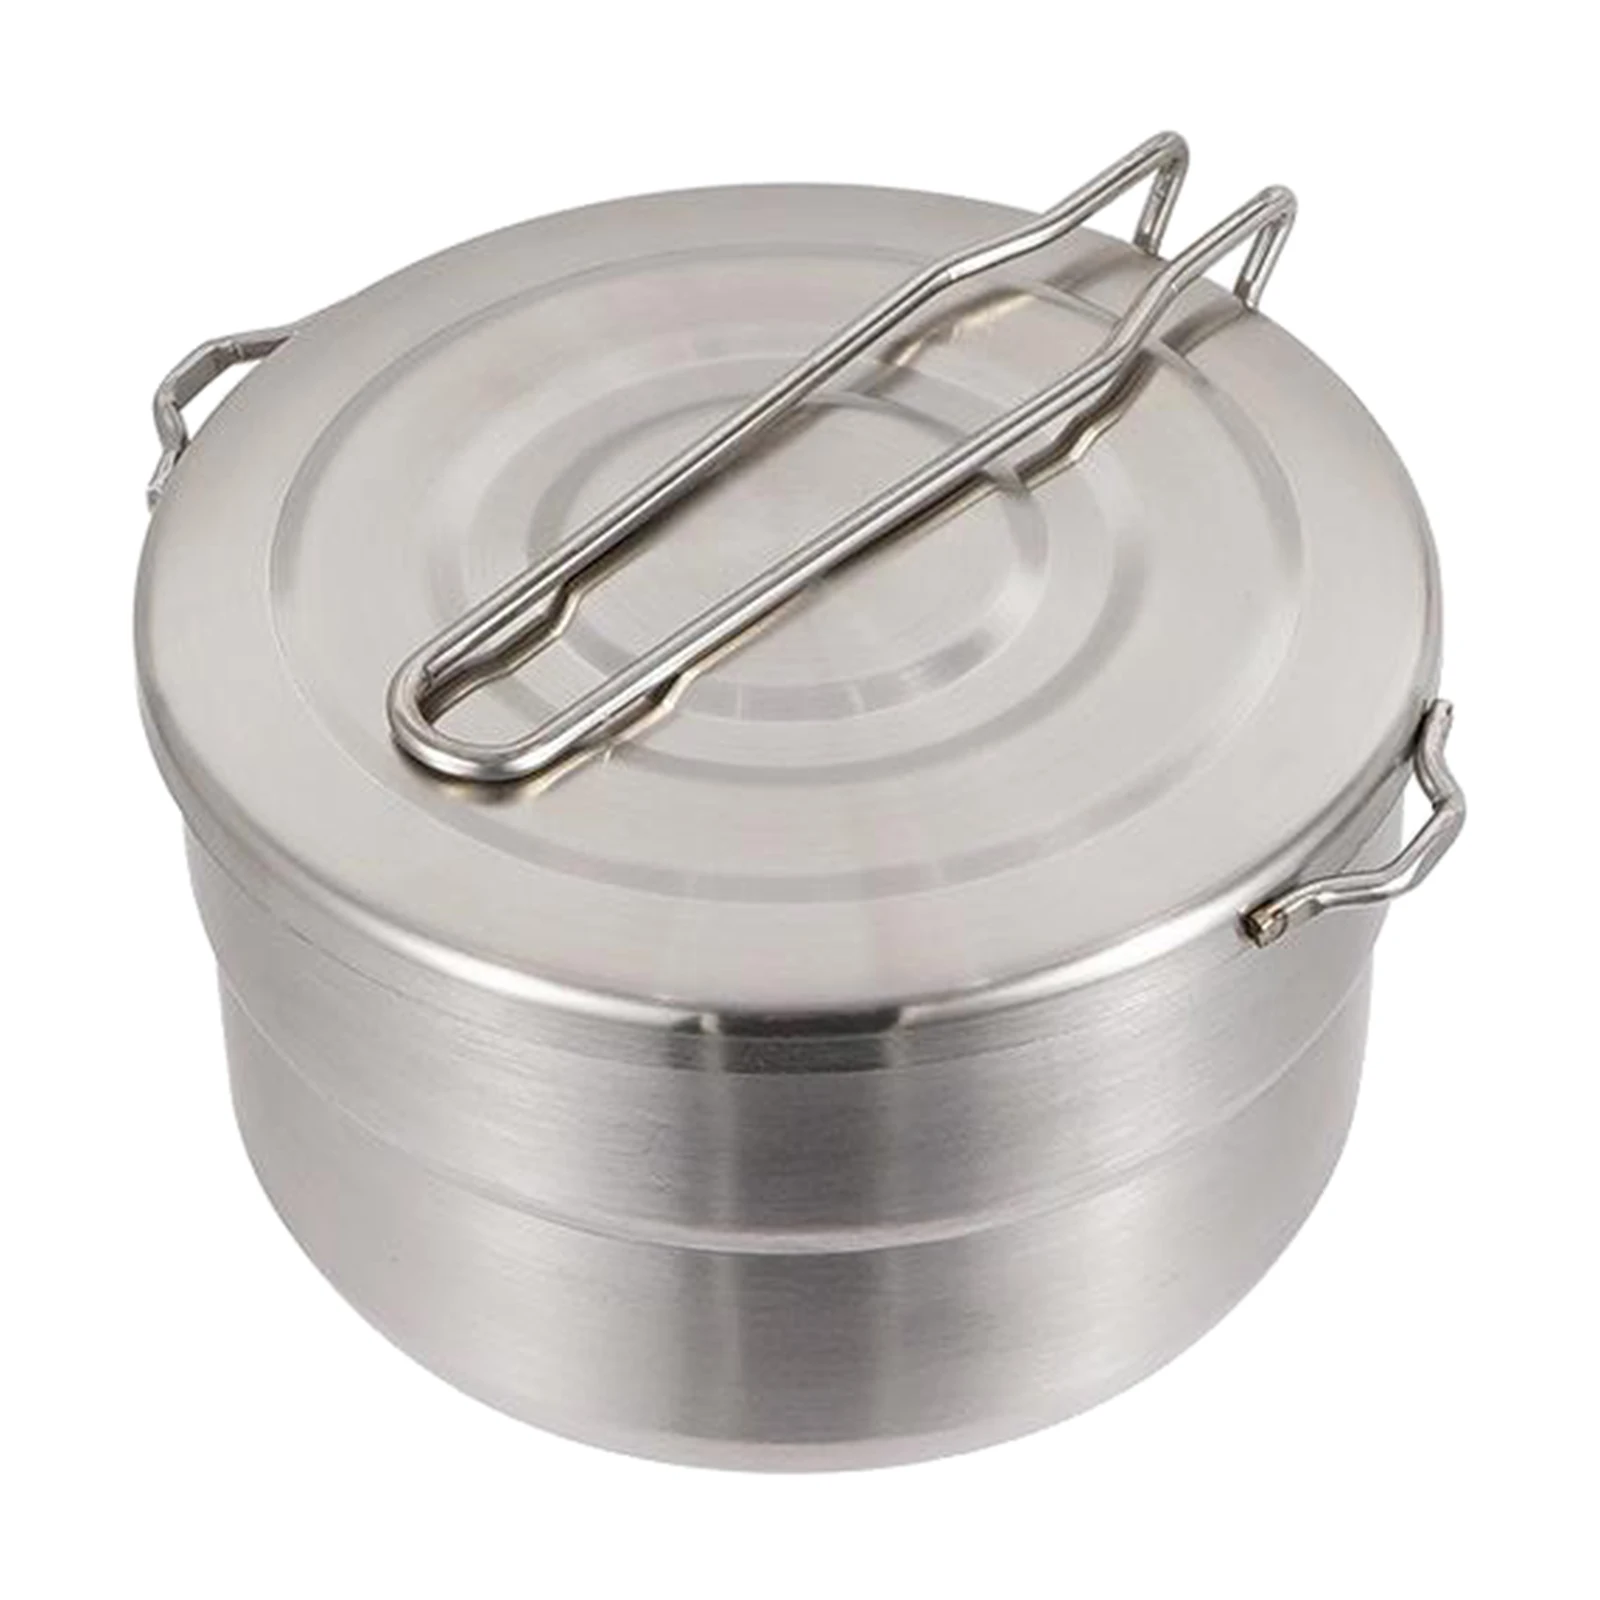 Saucepan with Lid, Sauce Pan, Small Soup Pan Pot, Nonstick Sauce Pan, 1.5L -